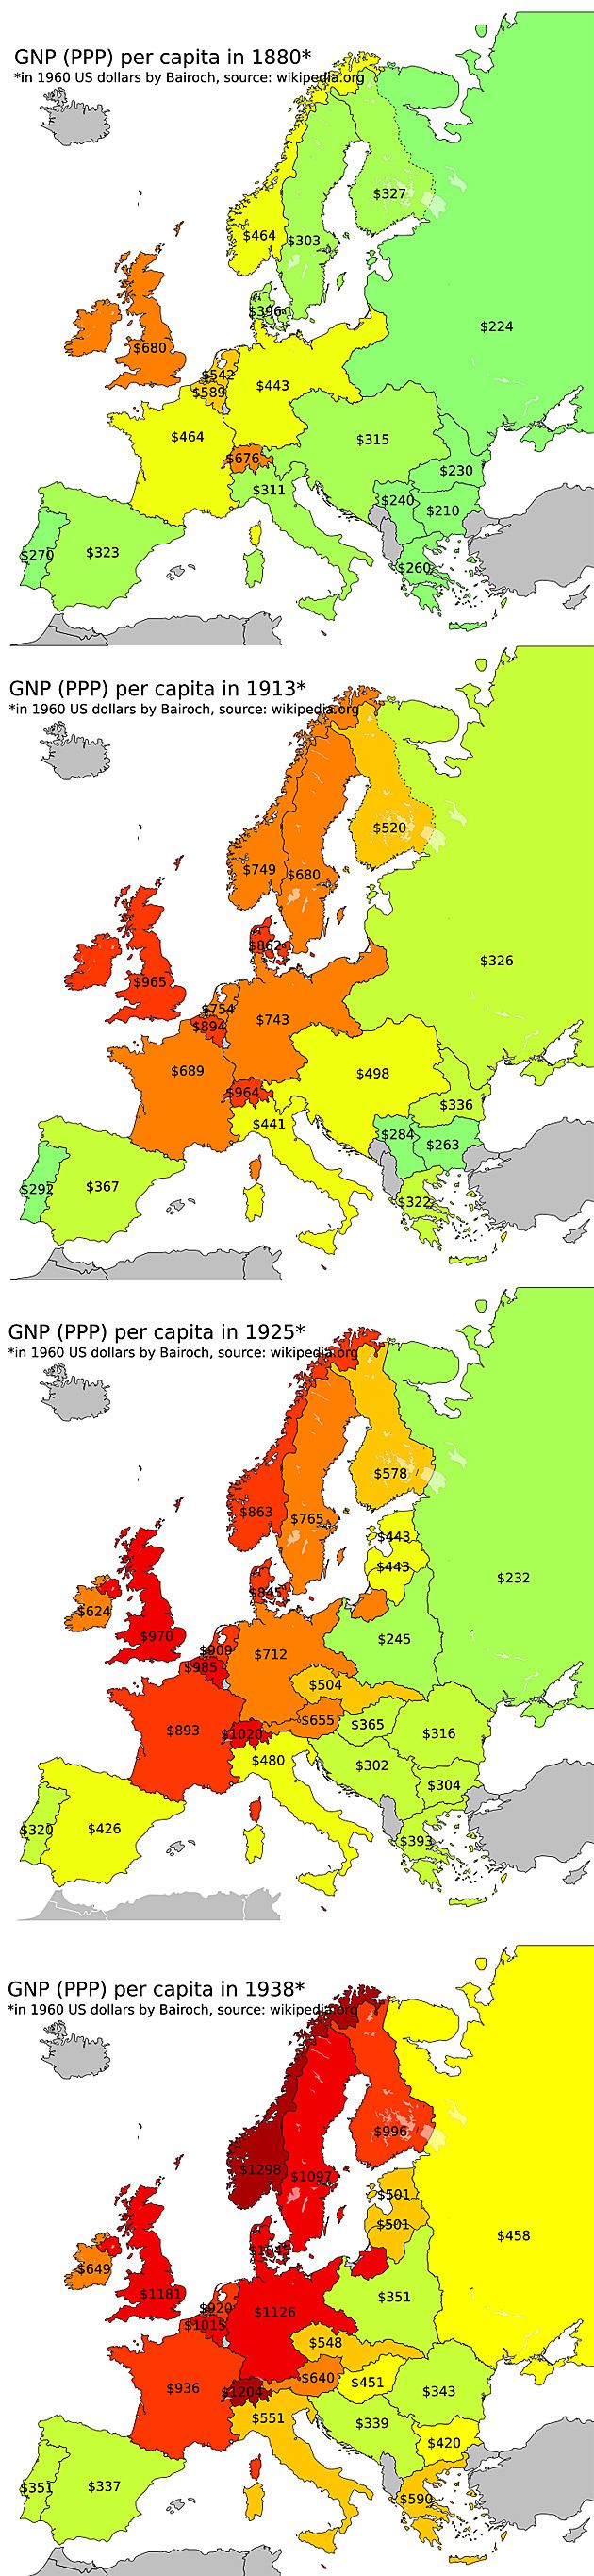 Parytet siły nabywczej GNP (PPP) w poszczególnych latach.